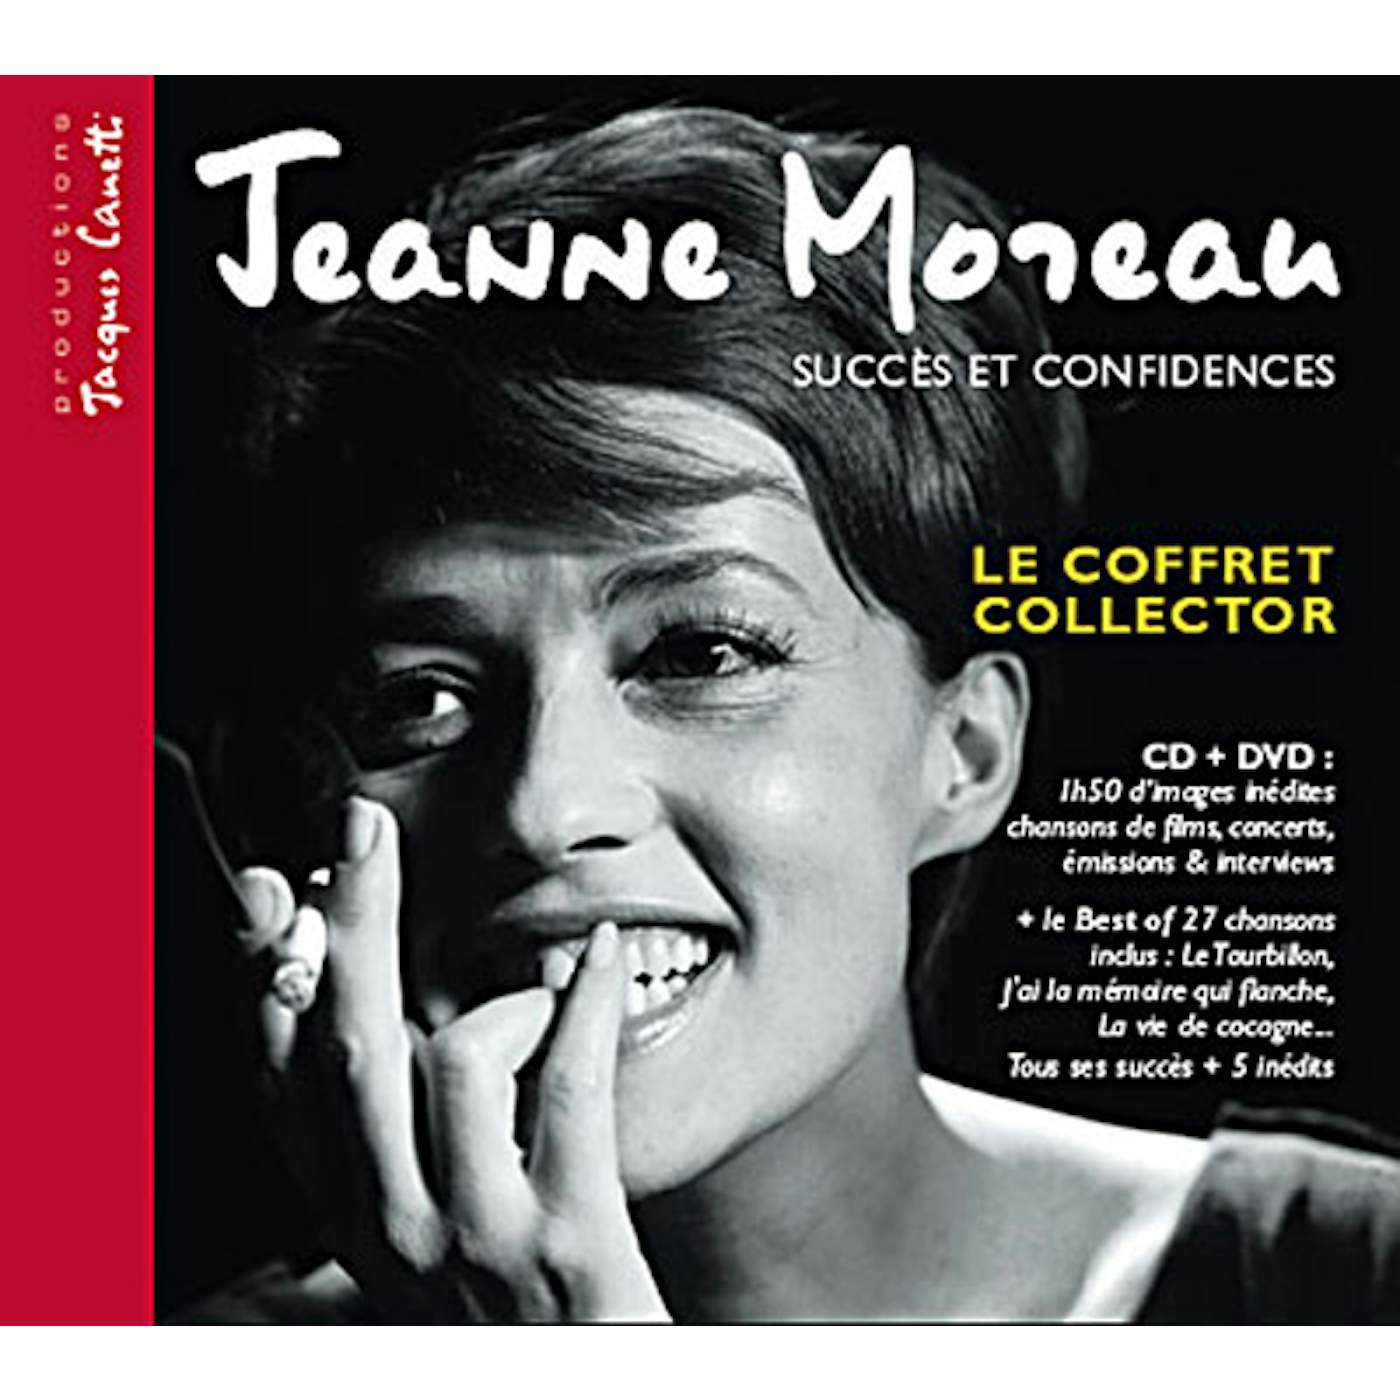 Jeanne Moreau SUCCES ET CONFIDENCES CD